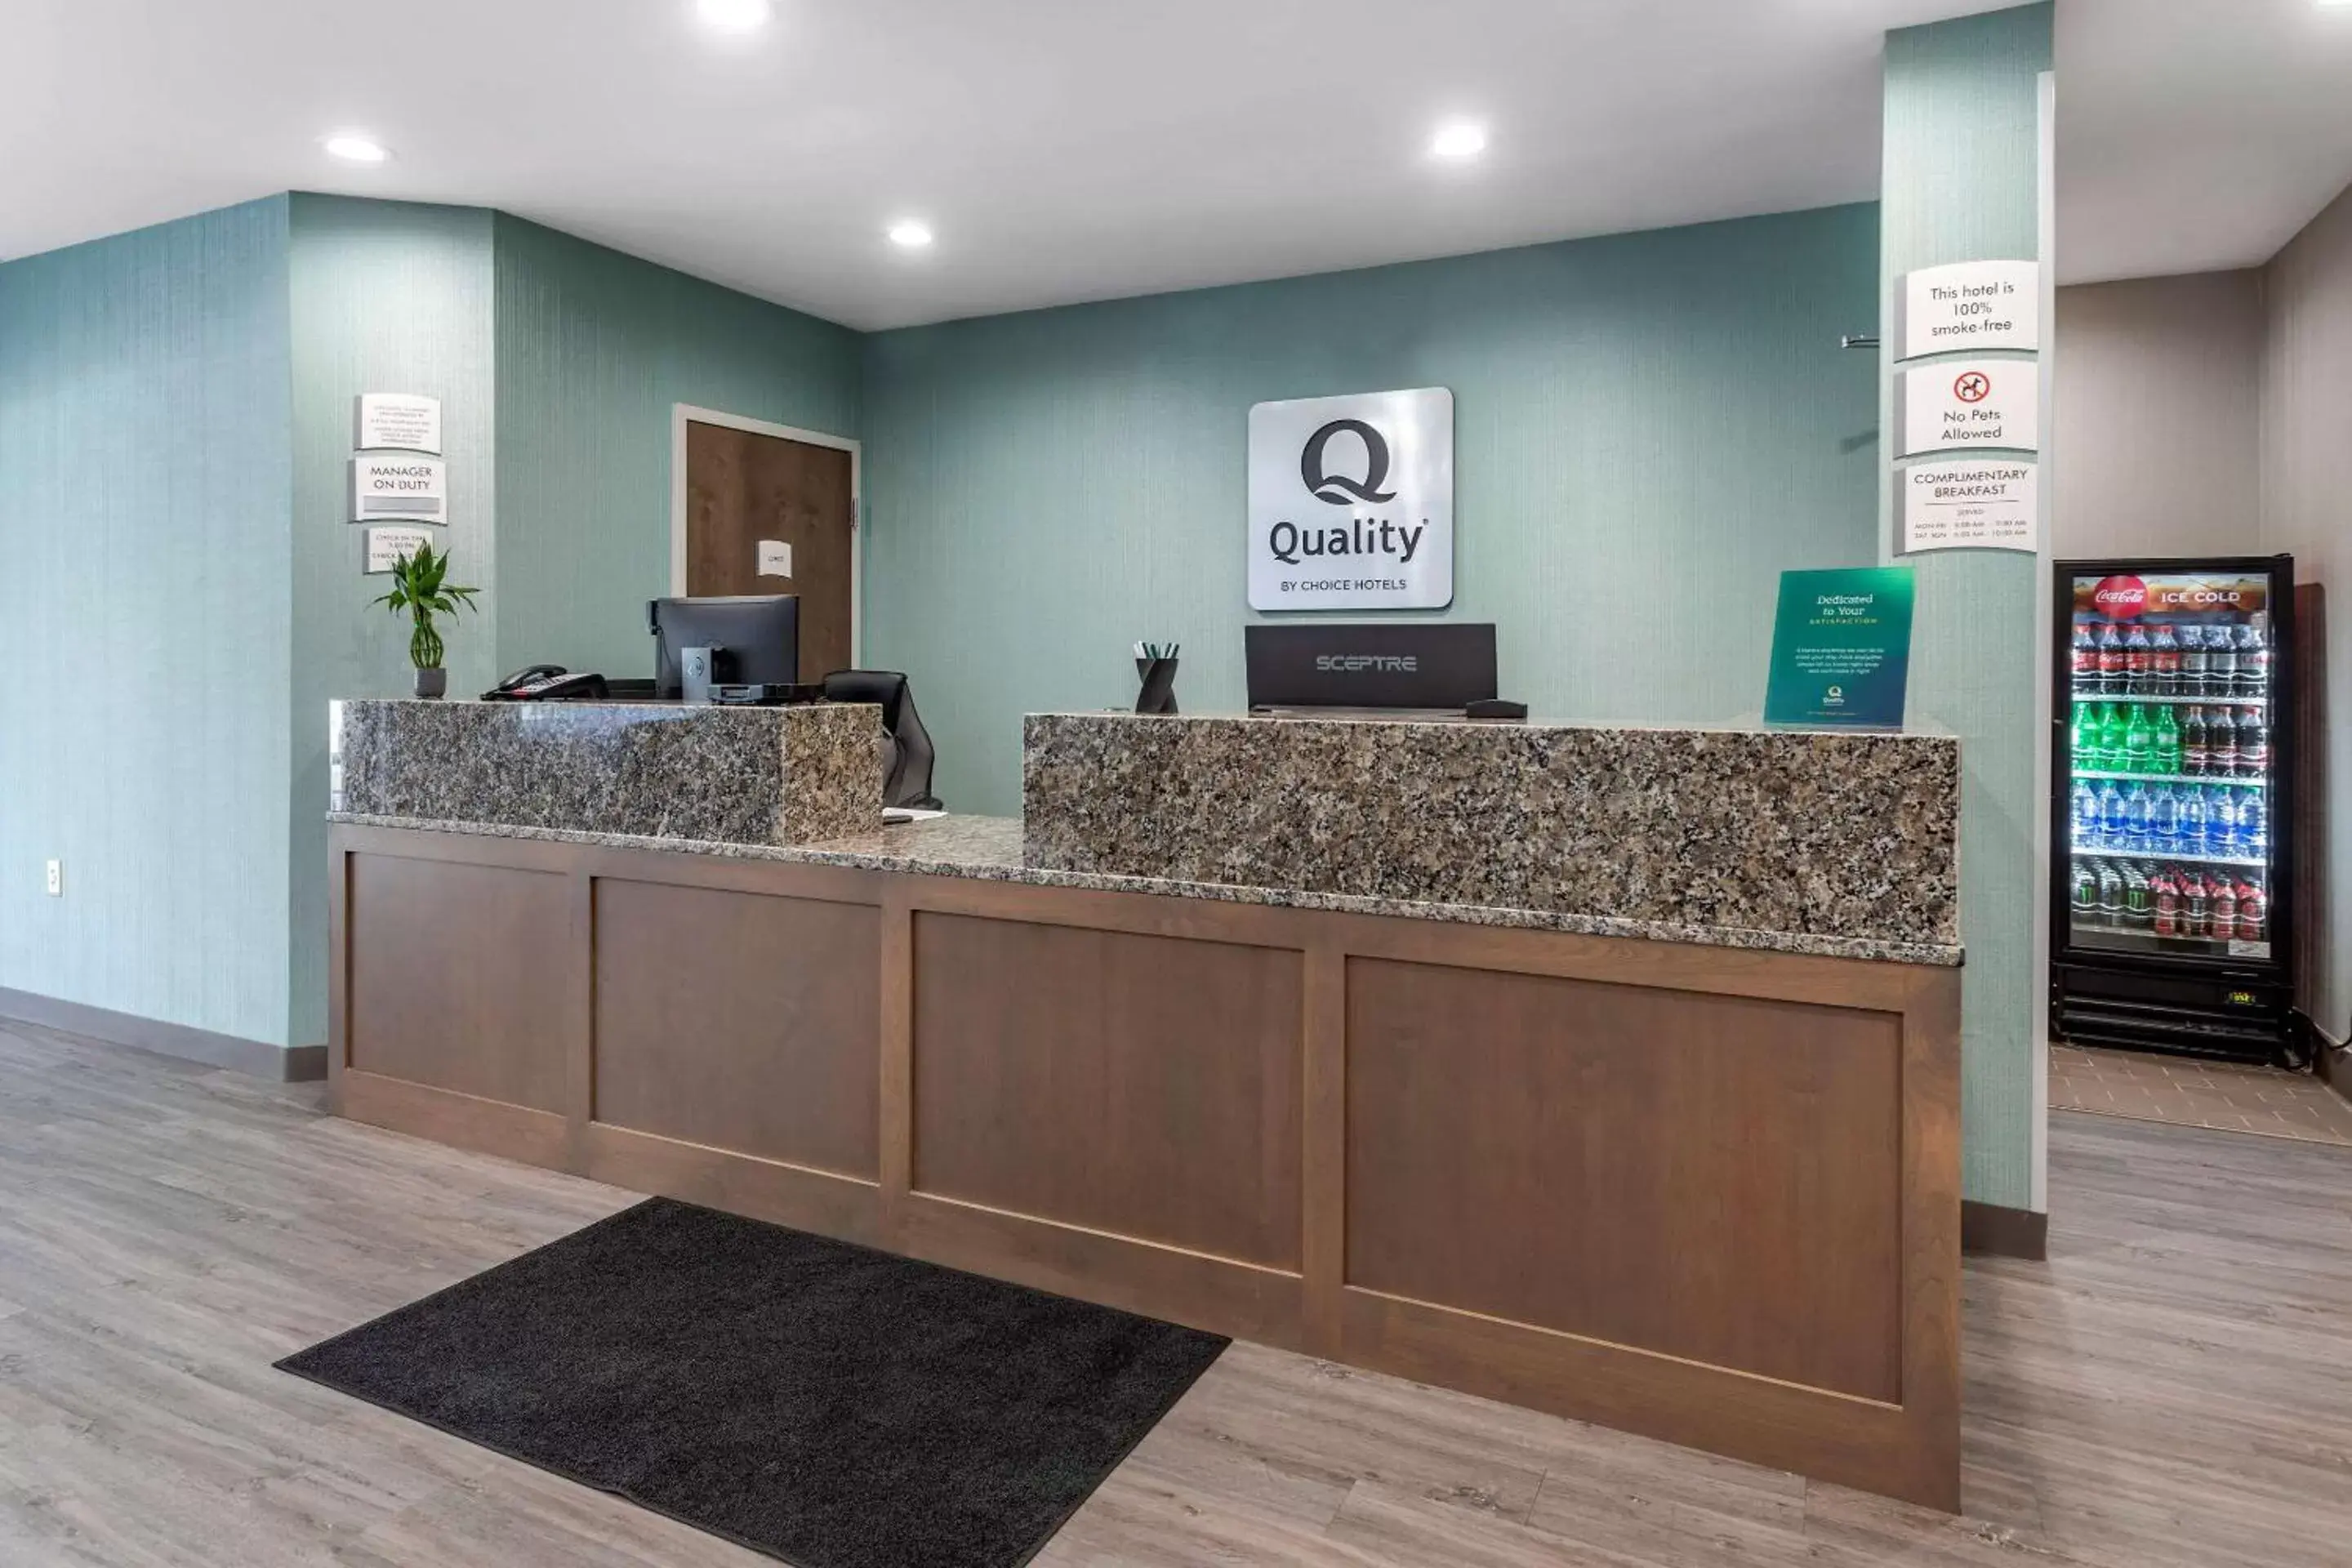 Lobby or reception, Lobby/Reception in Quality Inn Lebanon - Nashville Area